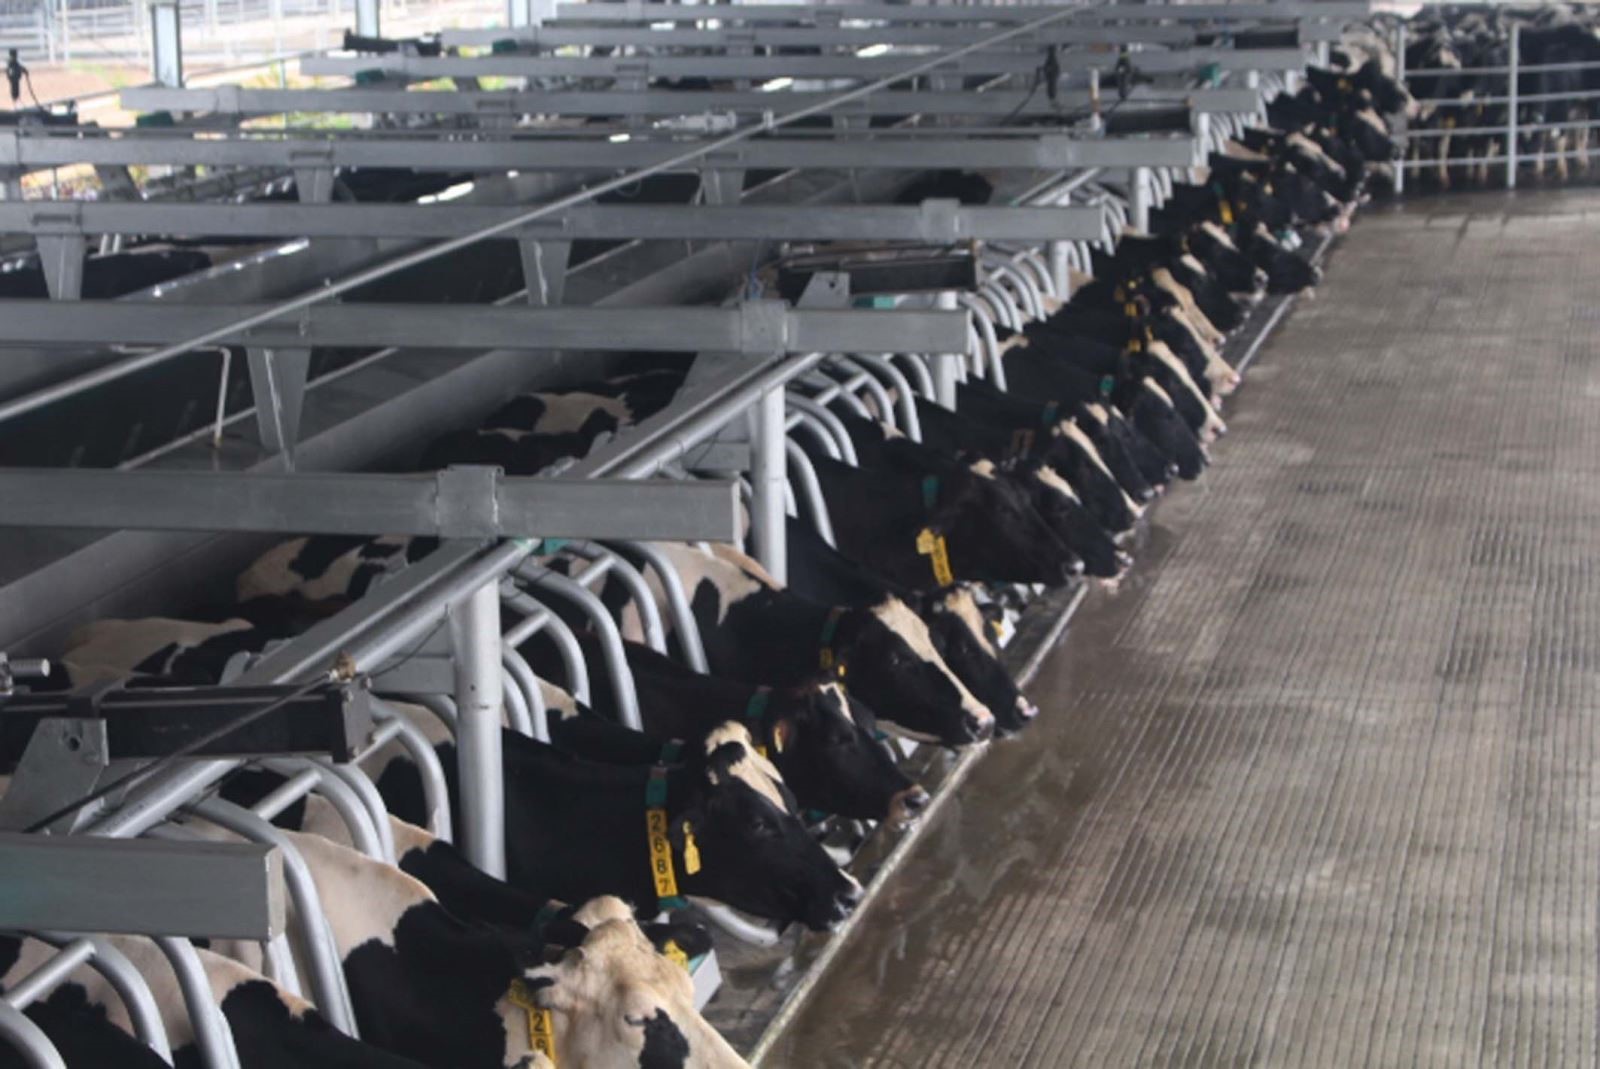 Trang trại bò sữa công nghệ cao Vinamilk Thanh Hóa diện tích xây dựng 40 ha, vốn đầu tư 700 tỷ đồng với công nghệ và máy móc hiện đại hàng đầu thế giới. 